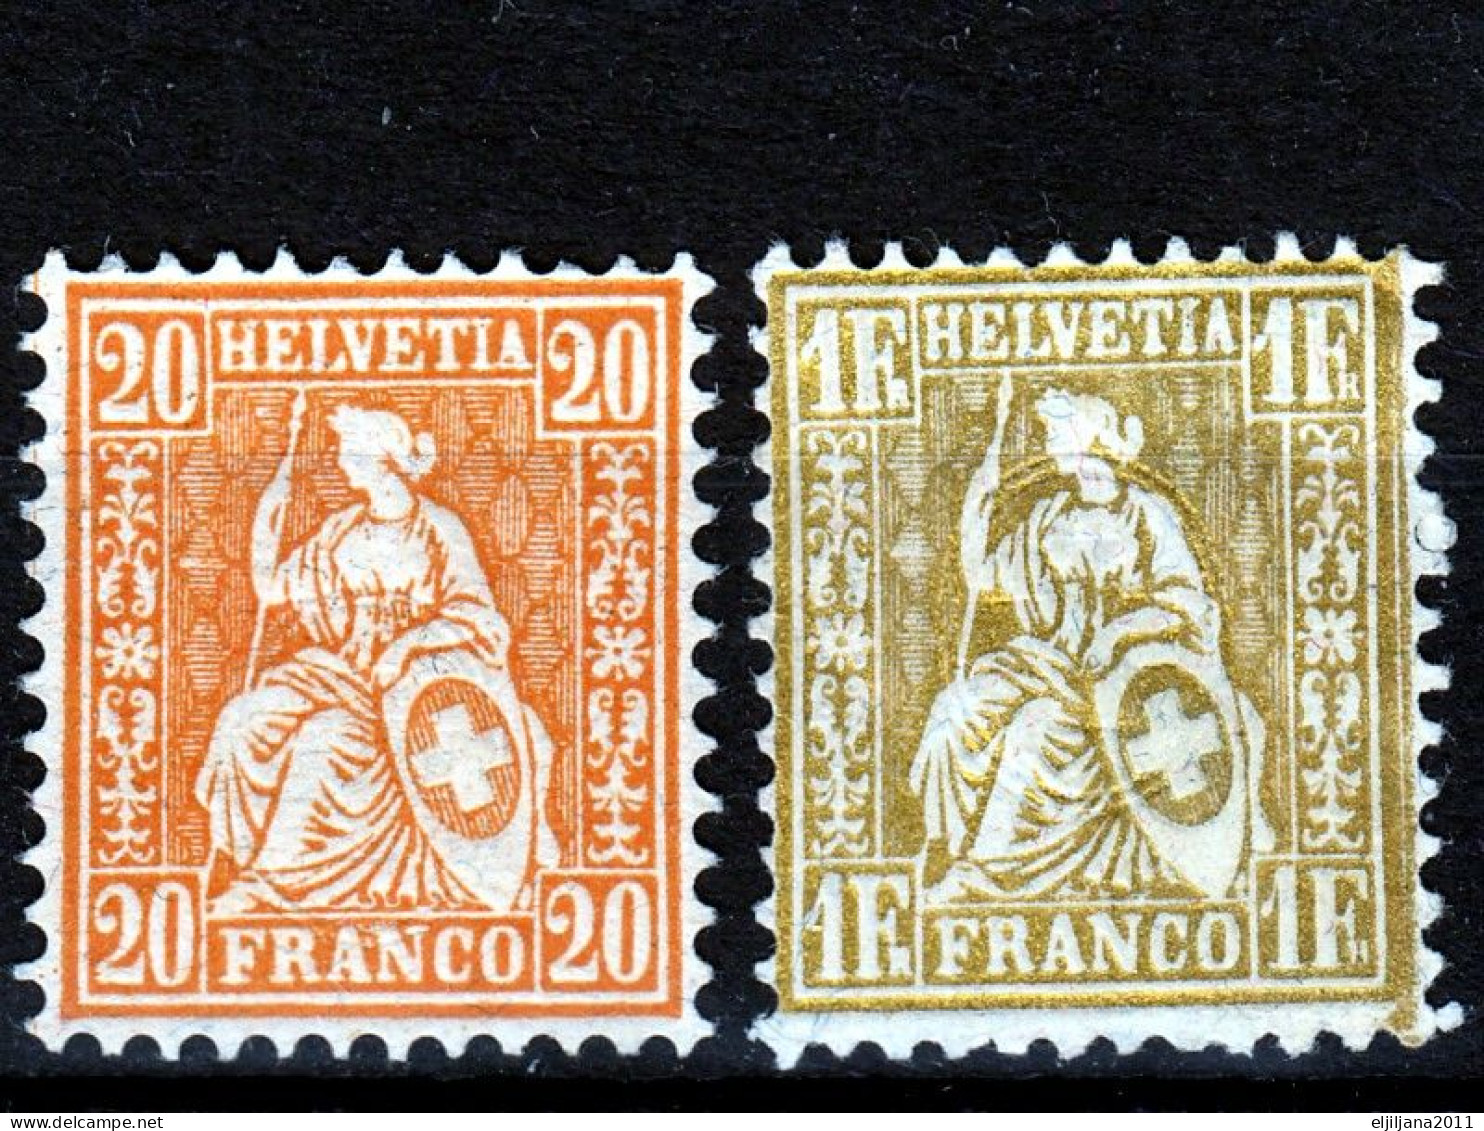 ⁕ Switzerland - SVIZZERA - SUISSE 1862 - 1881 ⁕ SEATED HELVETIA 20 C. & 1 Fr. Franco ⁕ 2v Unused - No Gum - Nuevos